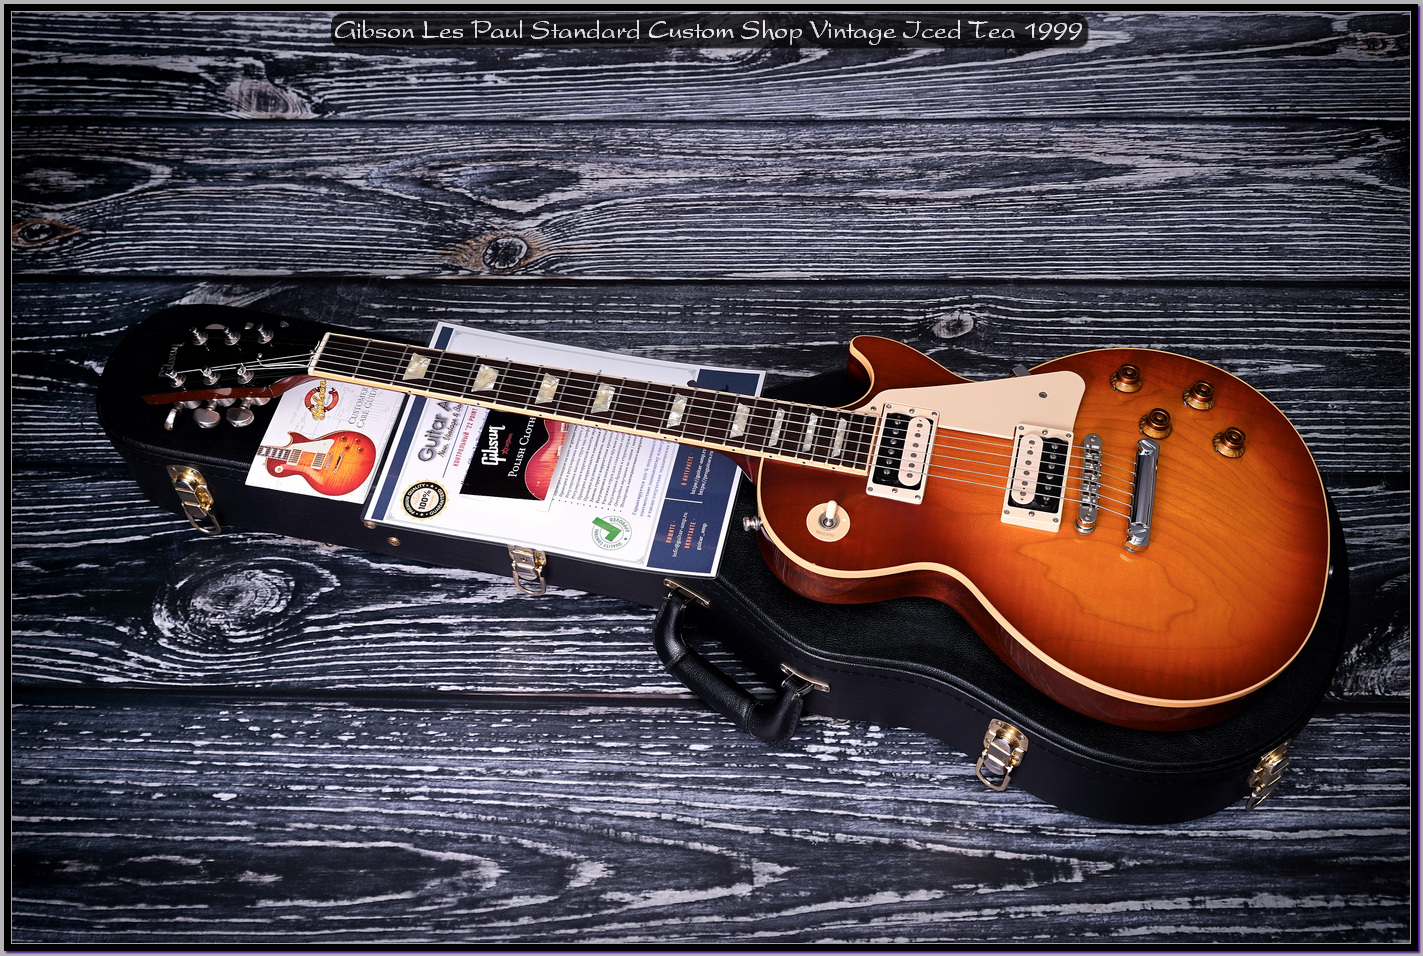 Gibson Les Paul Standard Custom Shop Vintage Iced Tea 1999 02_x1400.jpg